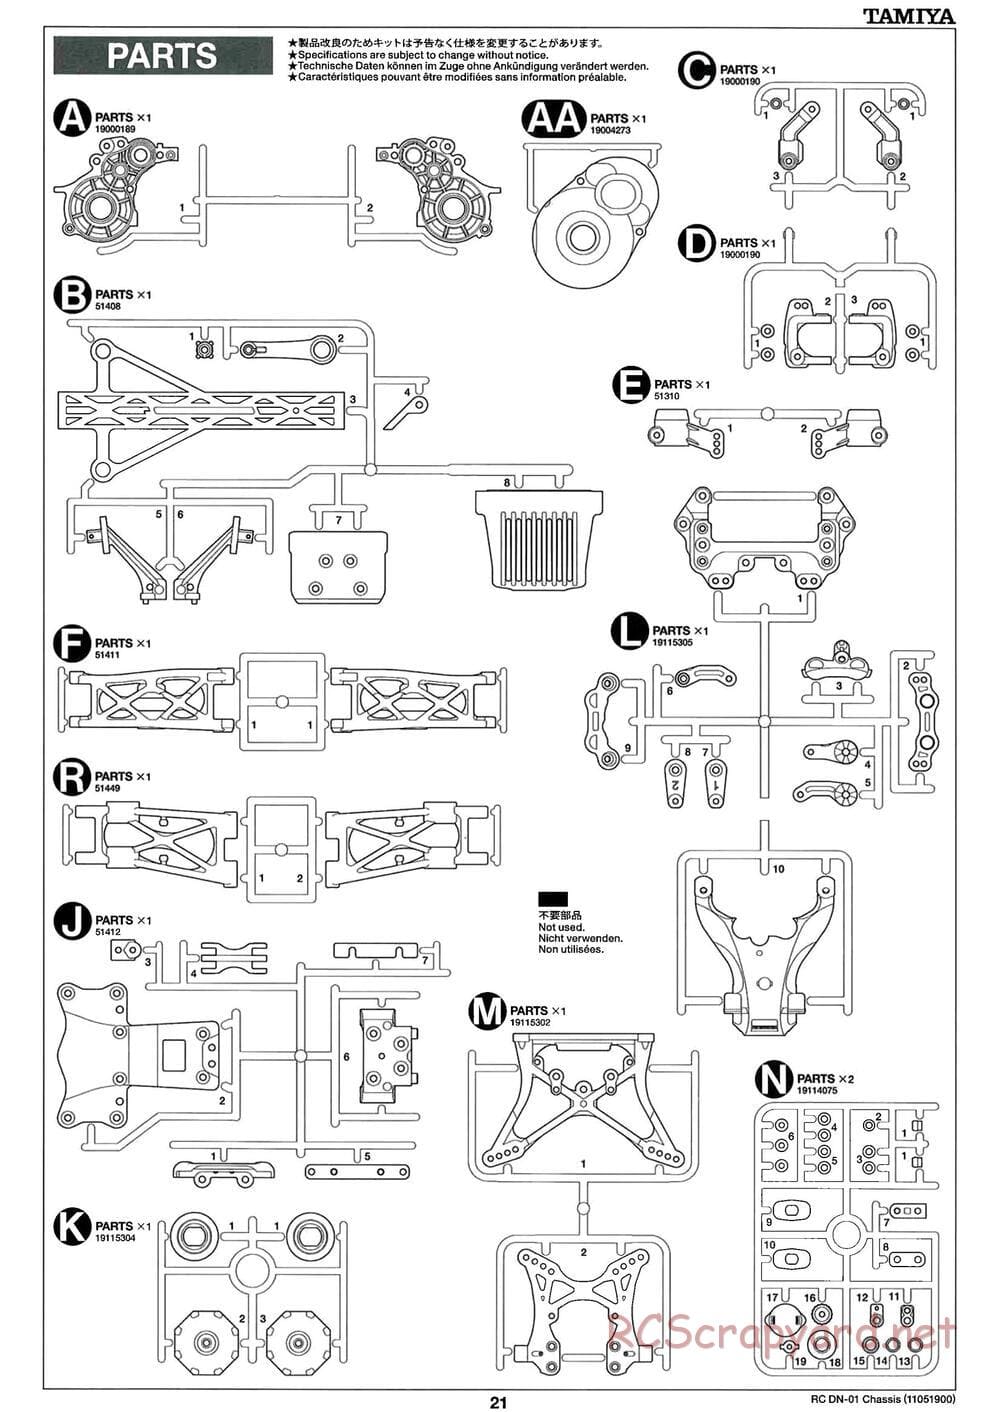 Tamiya - DN-01 Chassis - Manual - Page 21